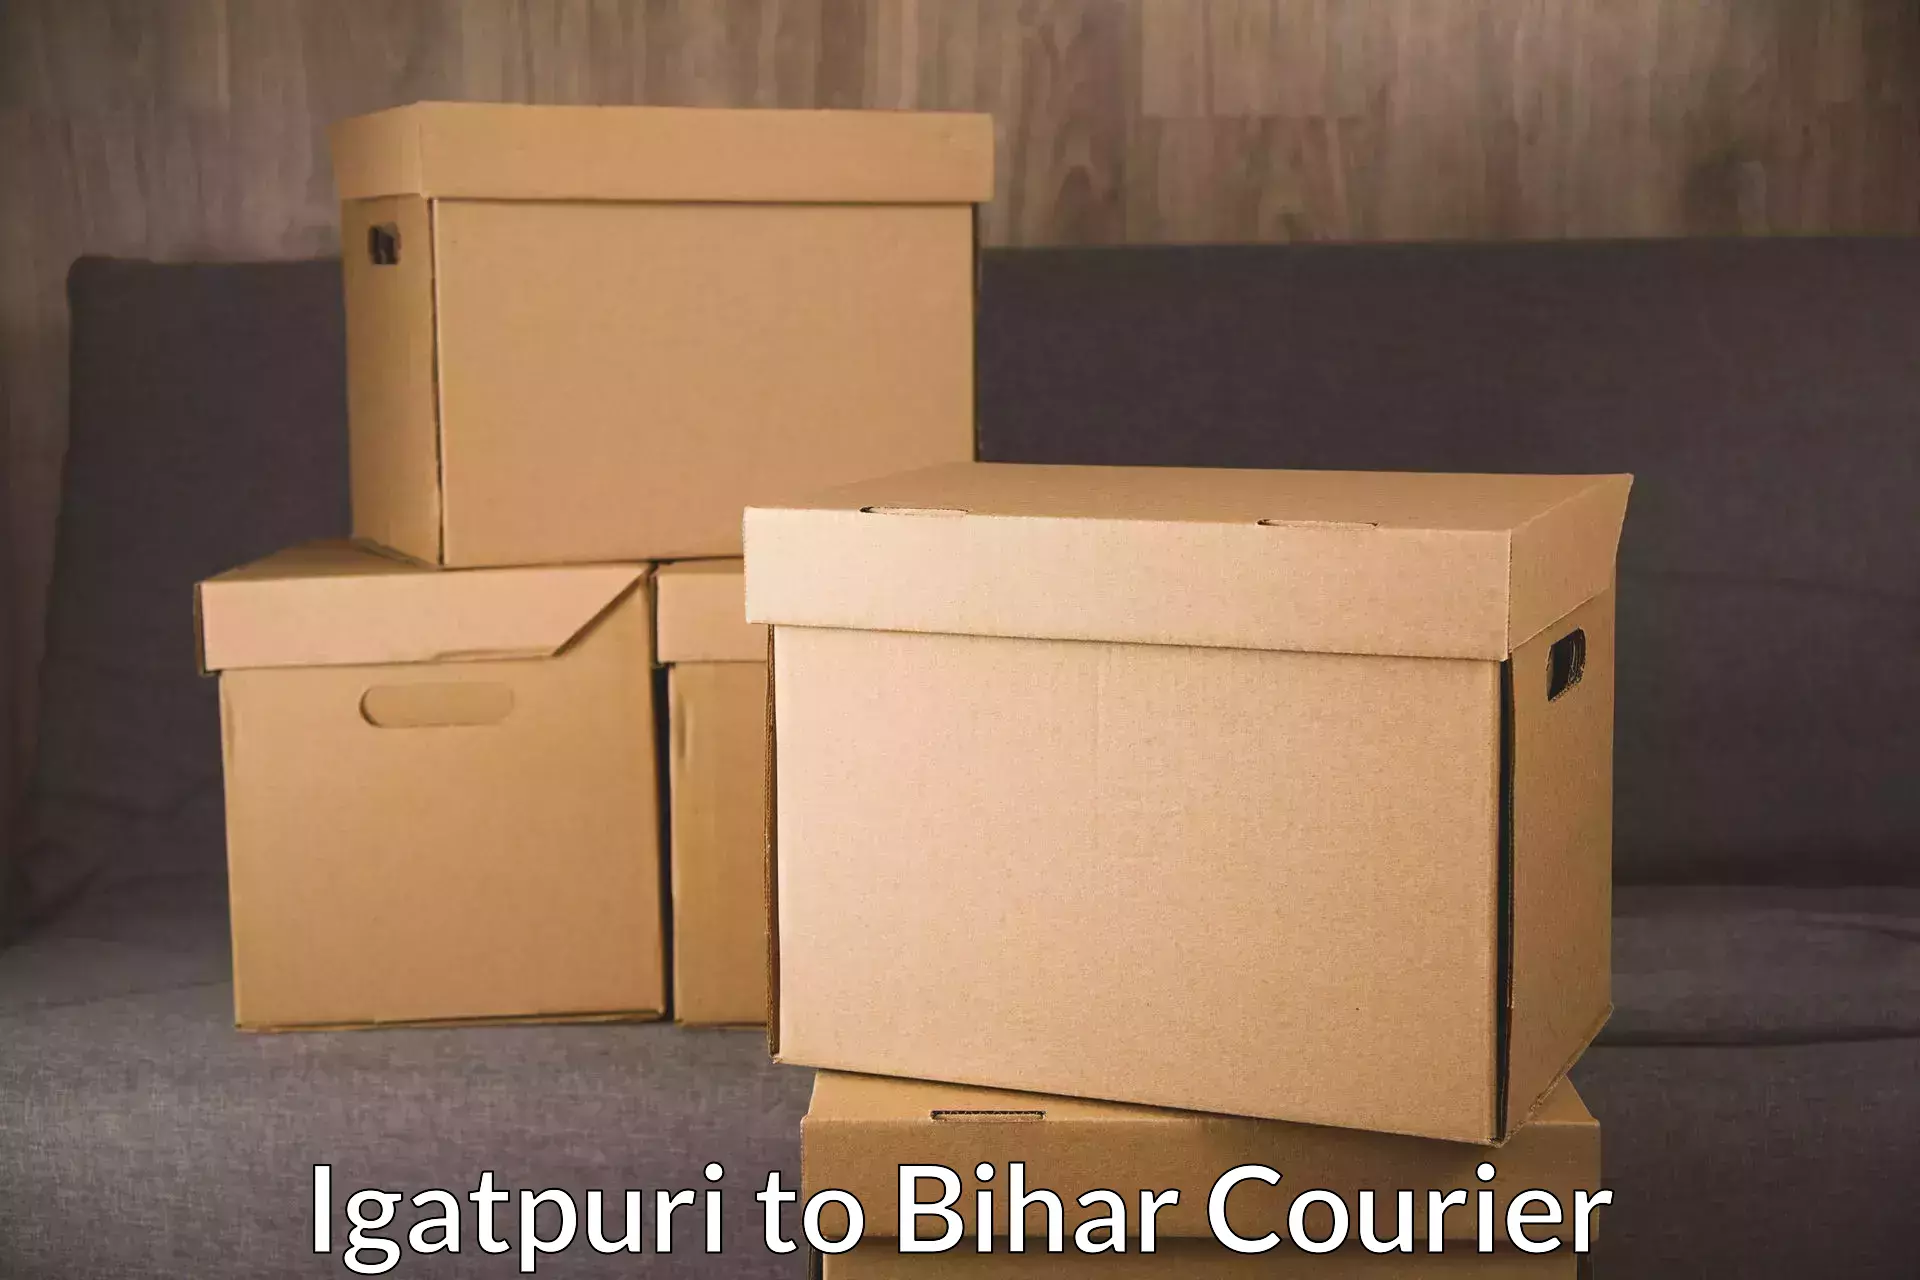 Customized shipping options Igatpuri to Bhorey